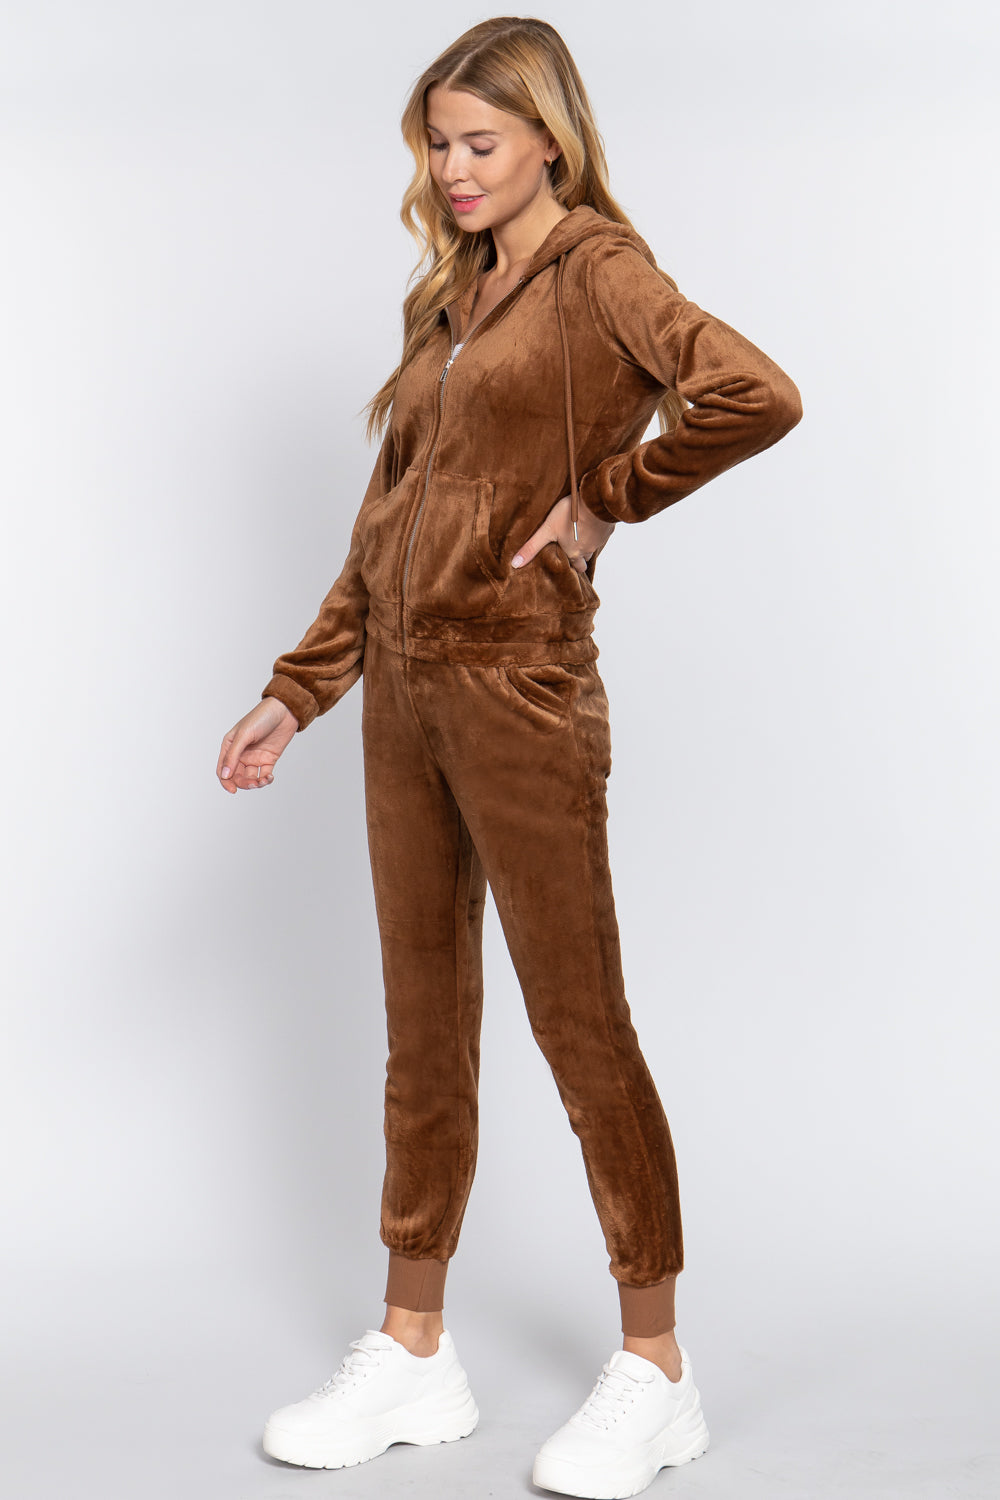 Brown - Faux Fur Jacket & Jogger Pants Outfit Set - 9 colors - womens jogging set at TFC&H Co.